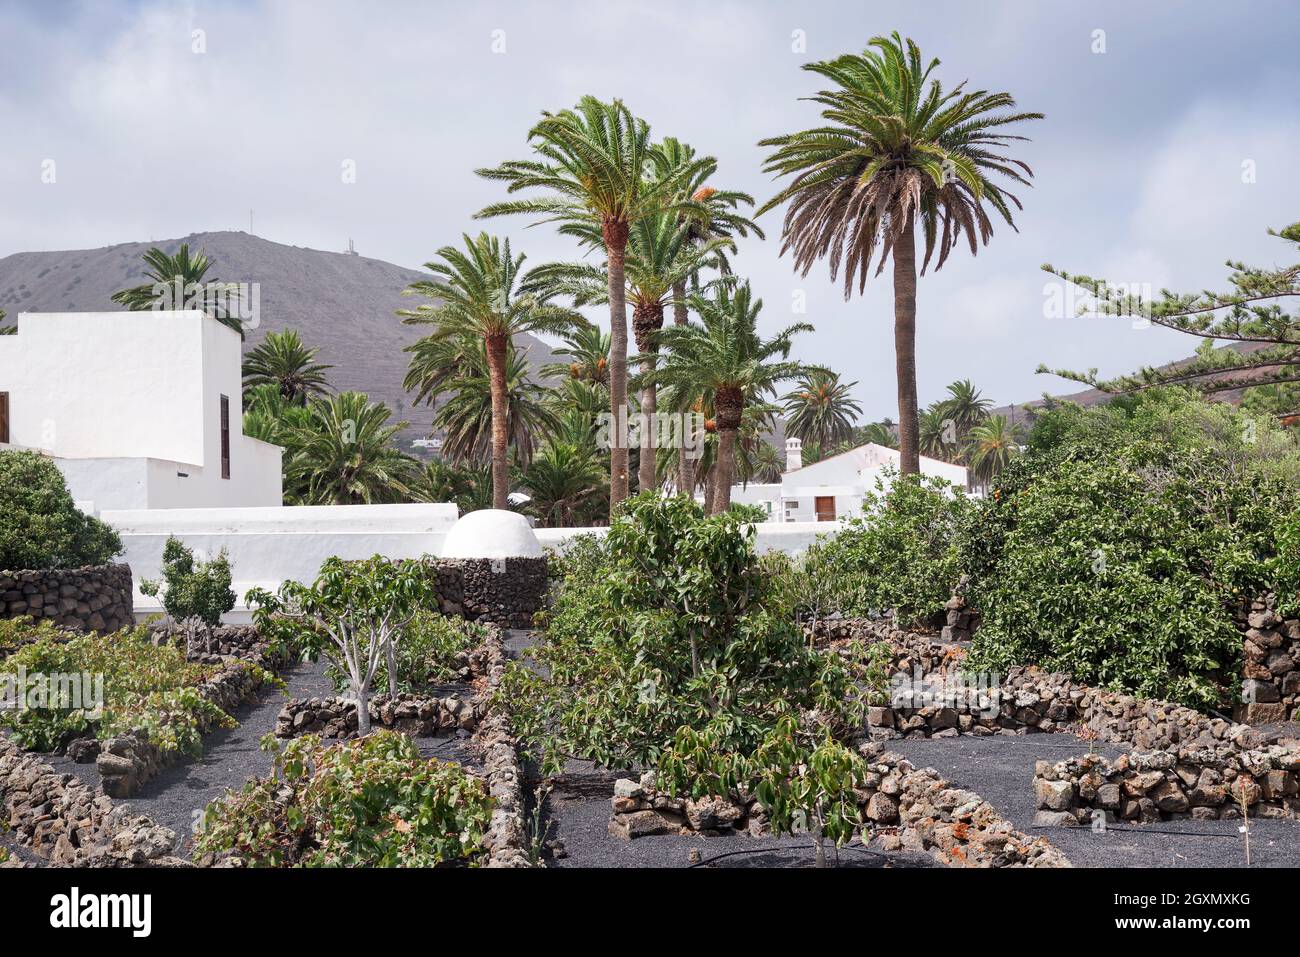 Les produits sont cultivés dans un sol volcanique fertile à Lanzarote.Ce jardin en terrasse à Haria est protégé des vents forts par des clôtures basses en pierre. Banque D'Images